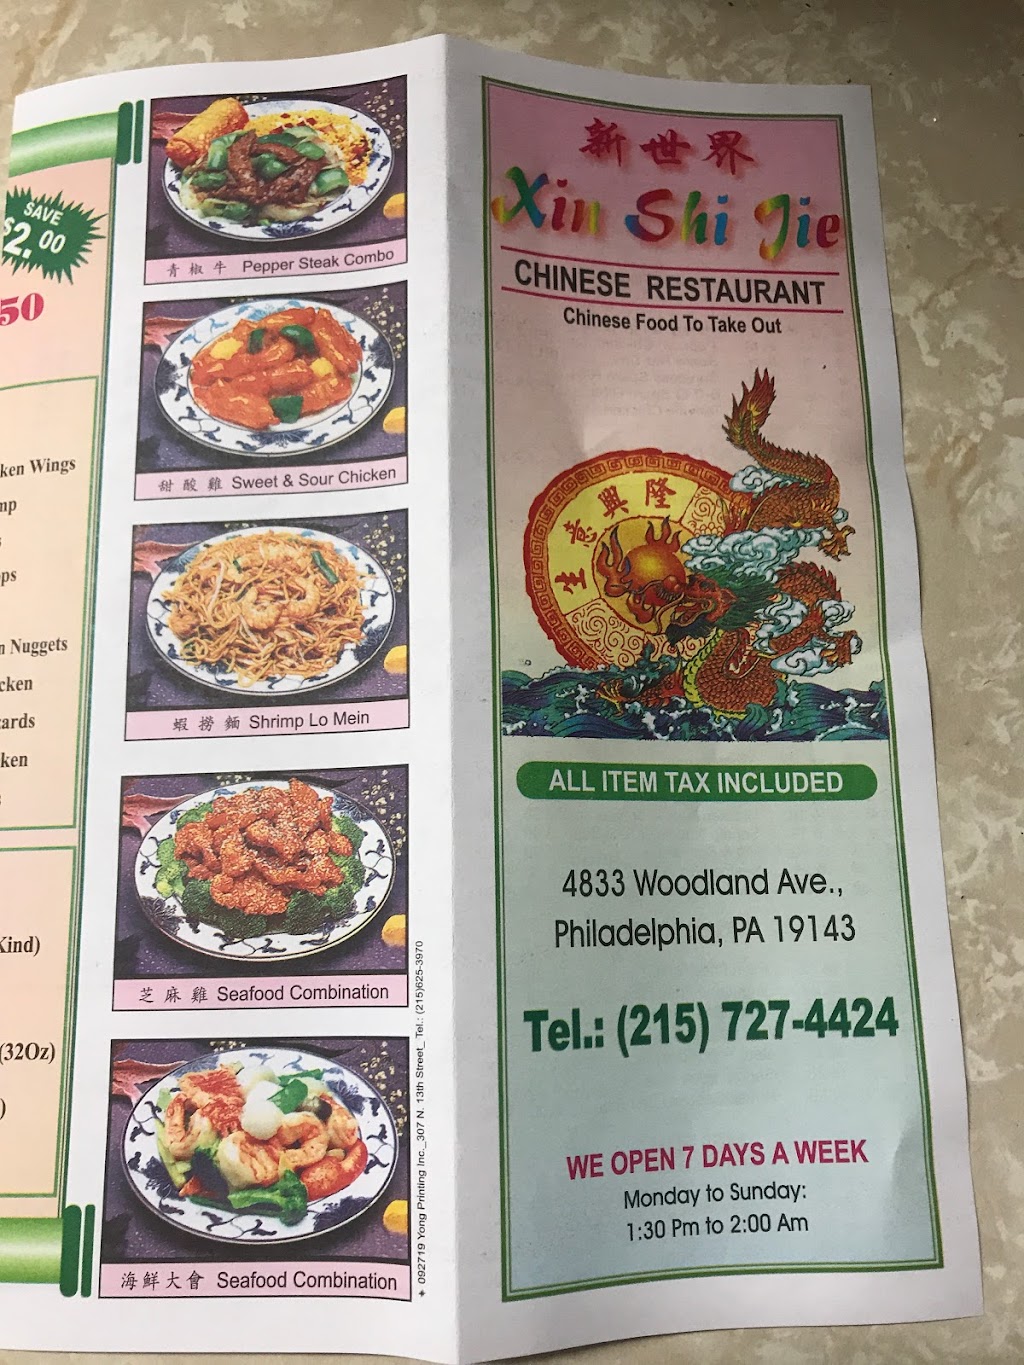 Yi Chung Wei Restaurant | 4833 Woodland Ave, Philadelphia, PA 19143 | Phone: (215) 727-4424